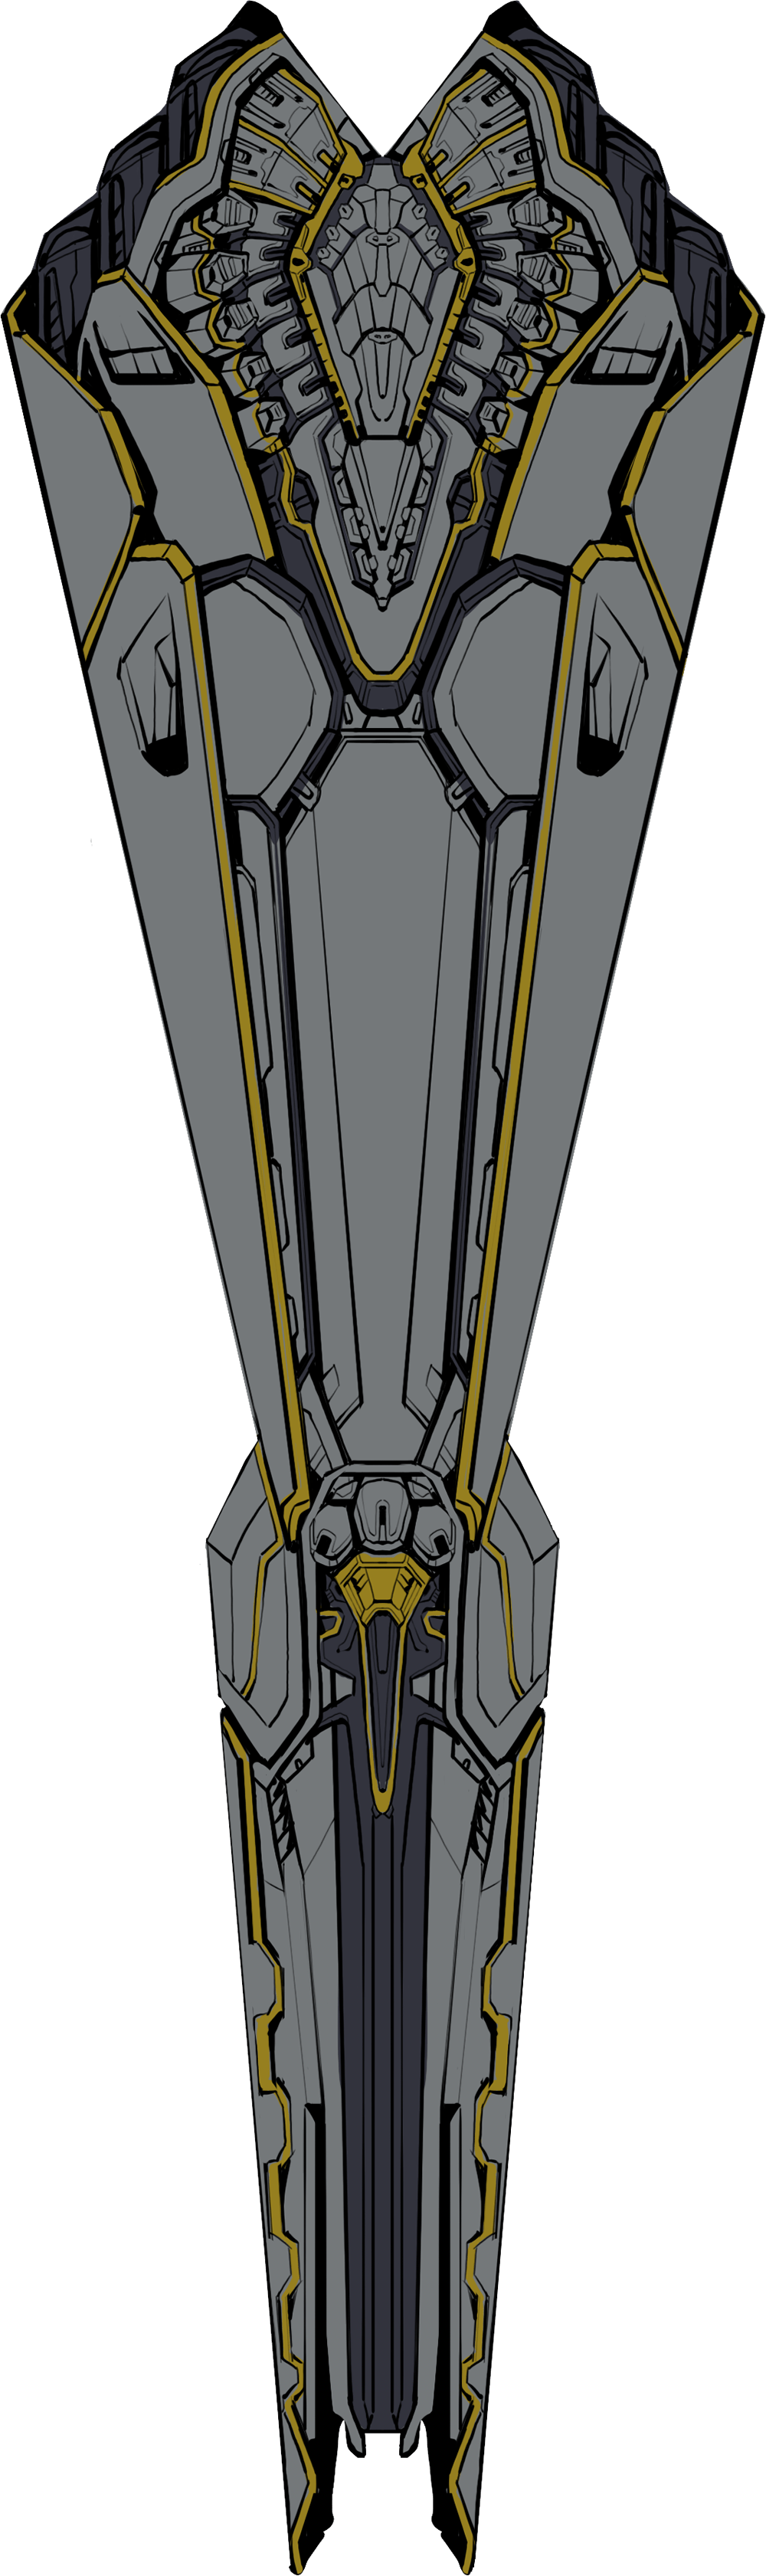 линкор афаари - вид снизу